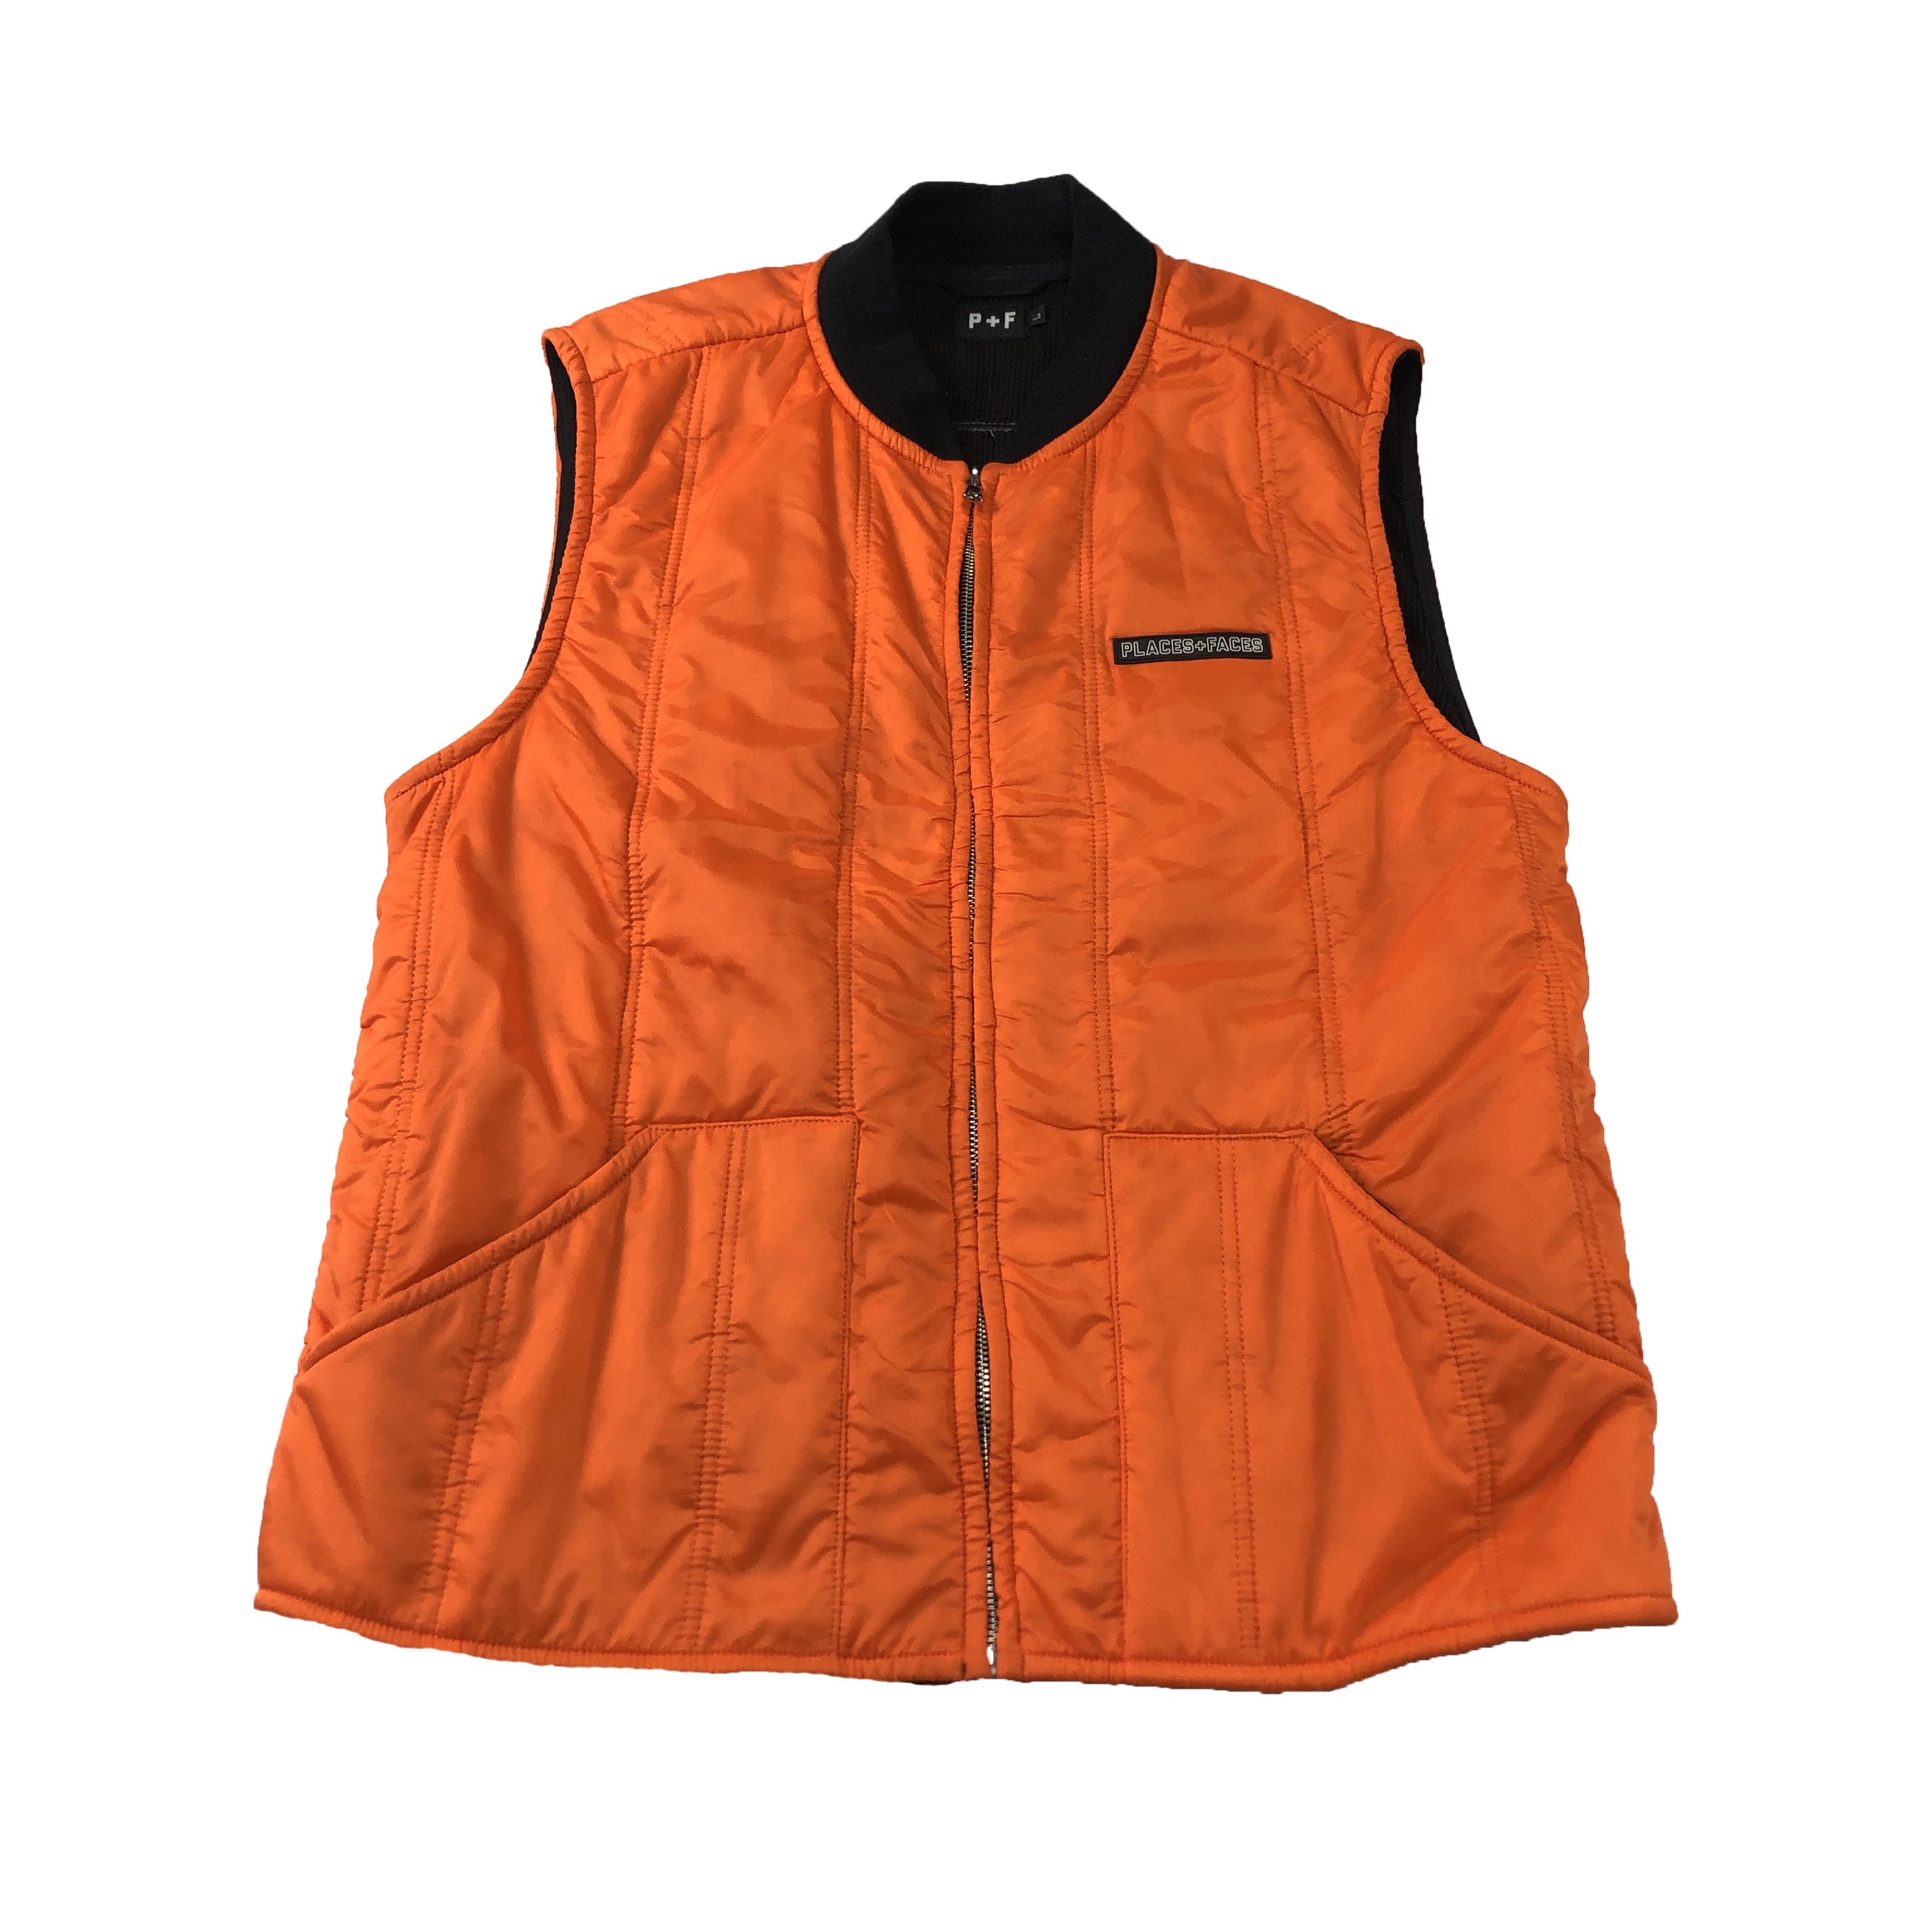 [Places + Faces] Orange Vest Jacket - Size L